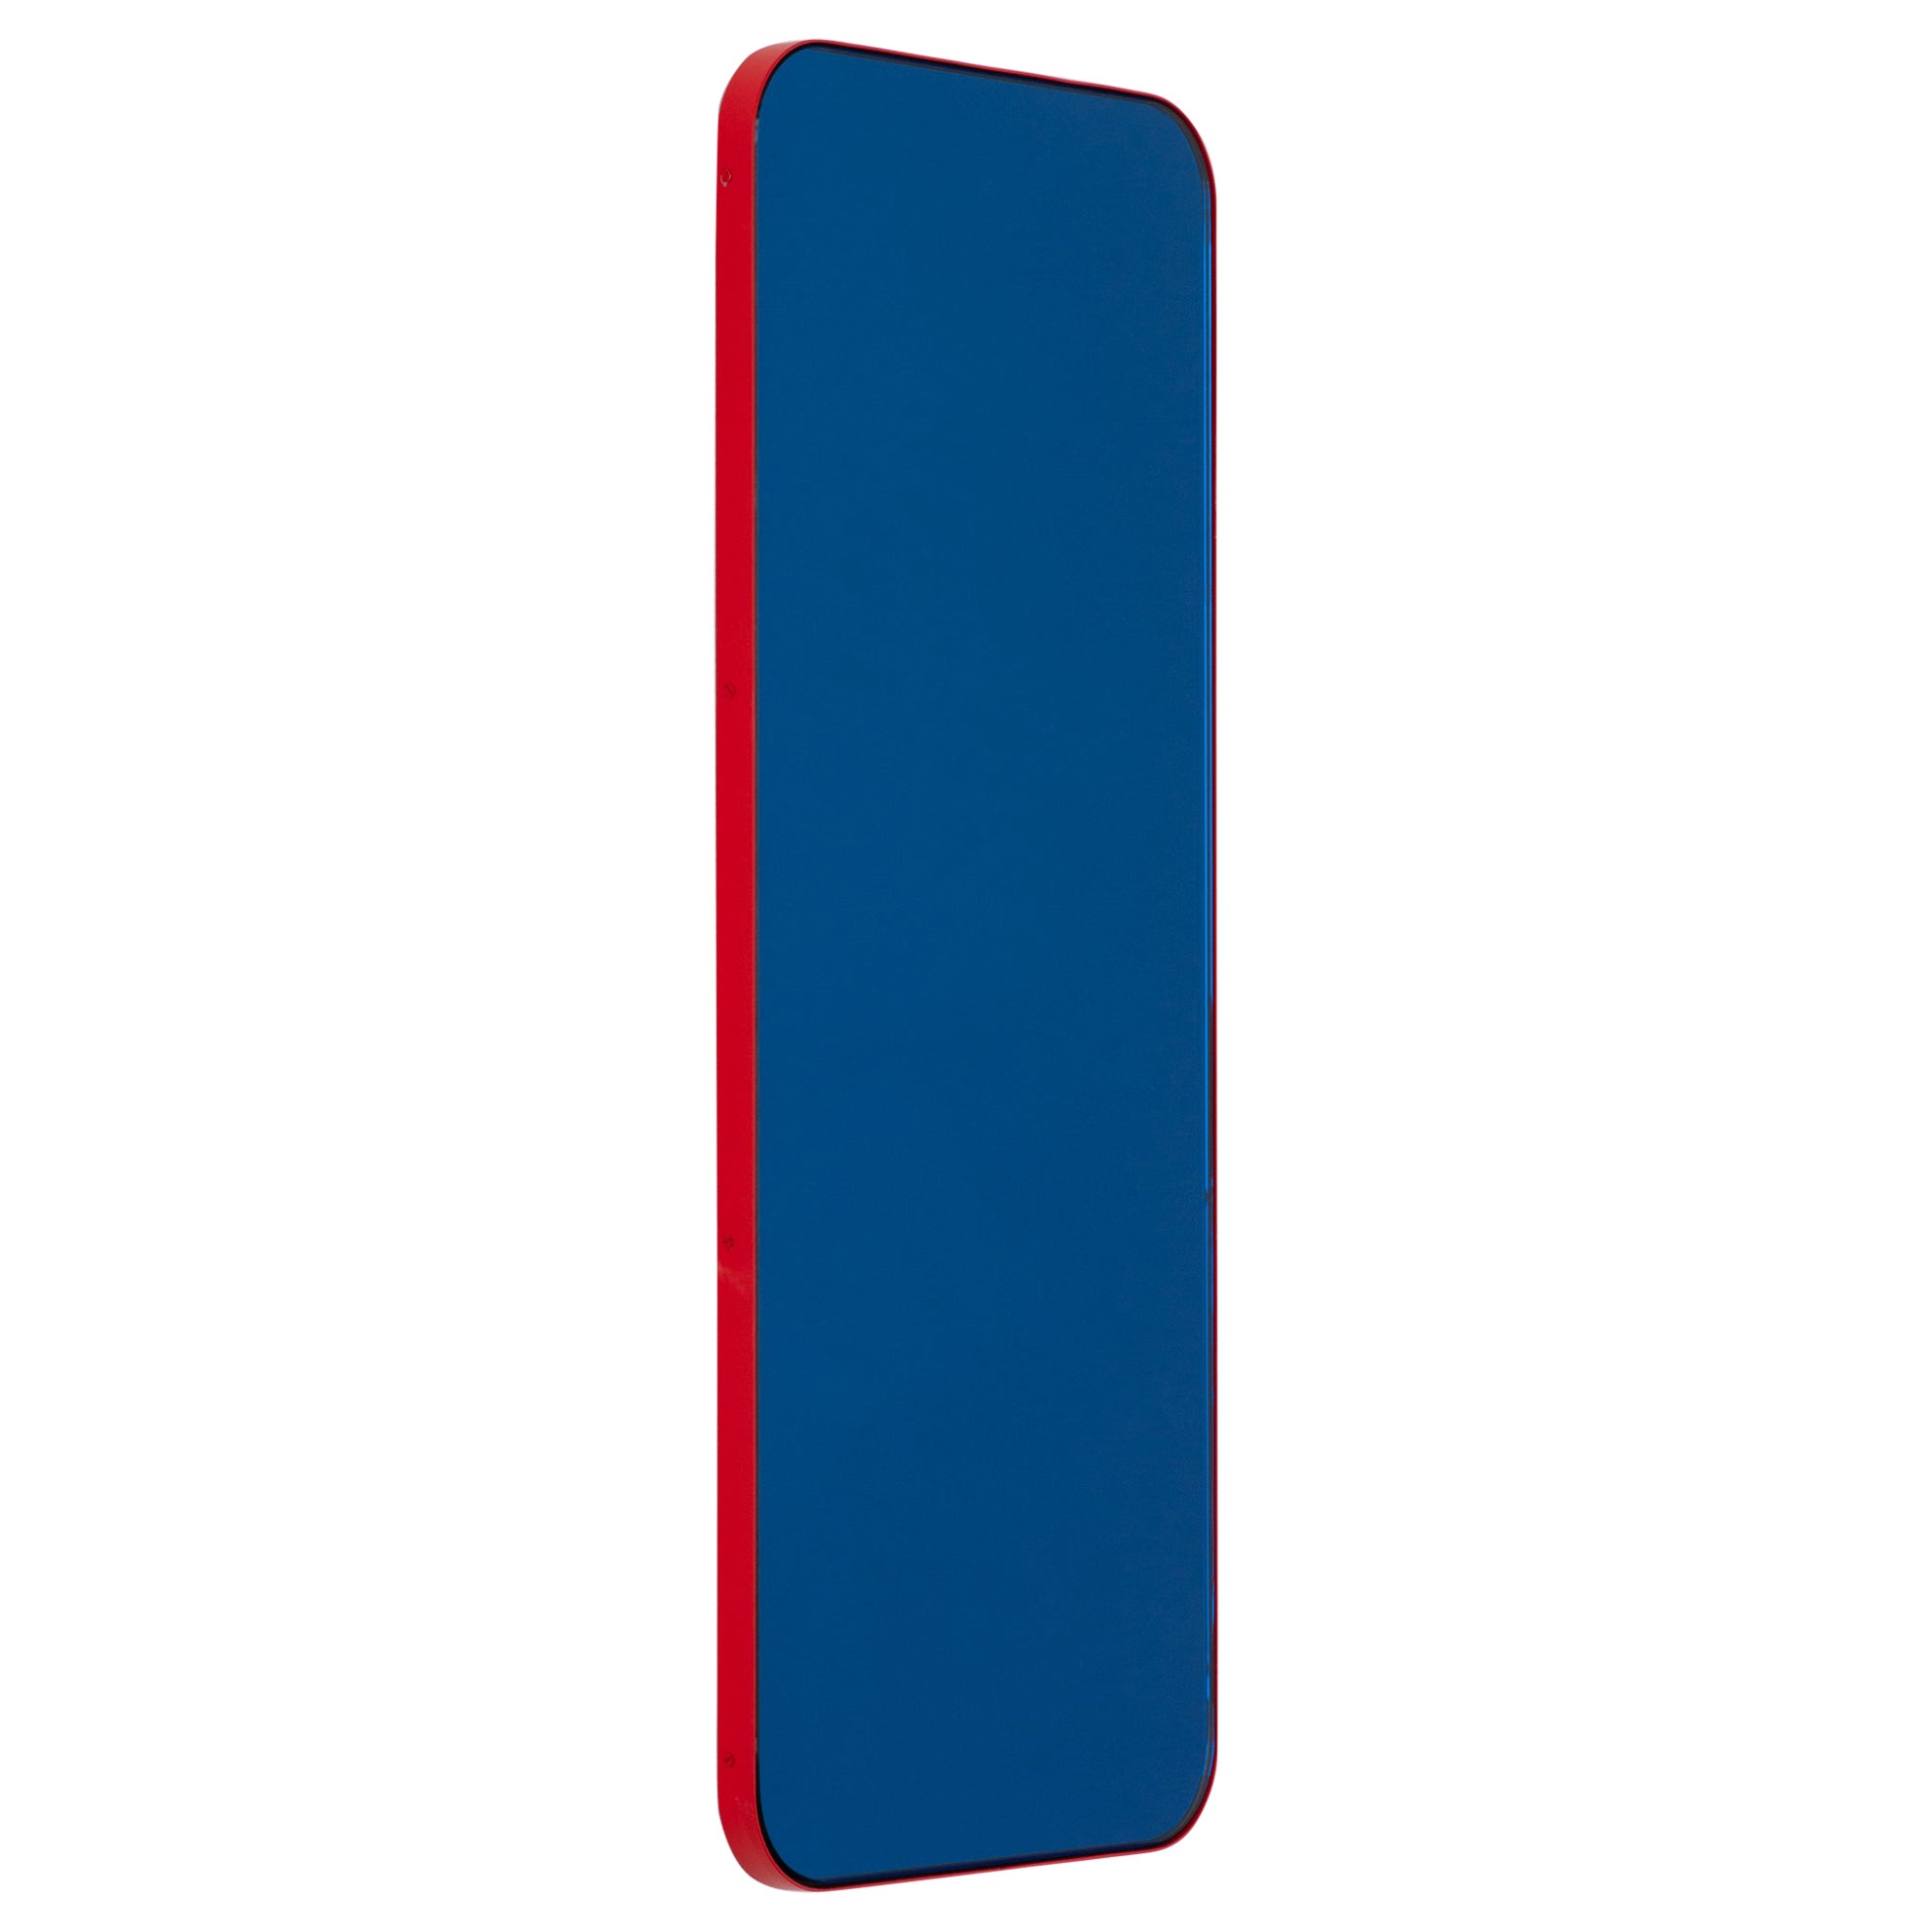 Miroir rectangulaire bleu contemporain Quadris avec cadre rouge, XL